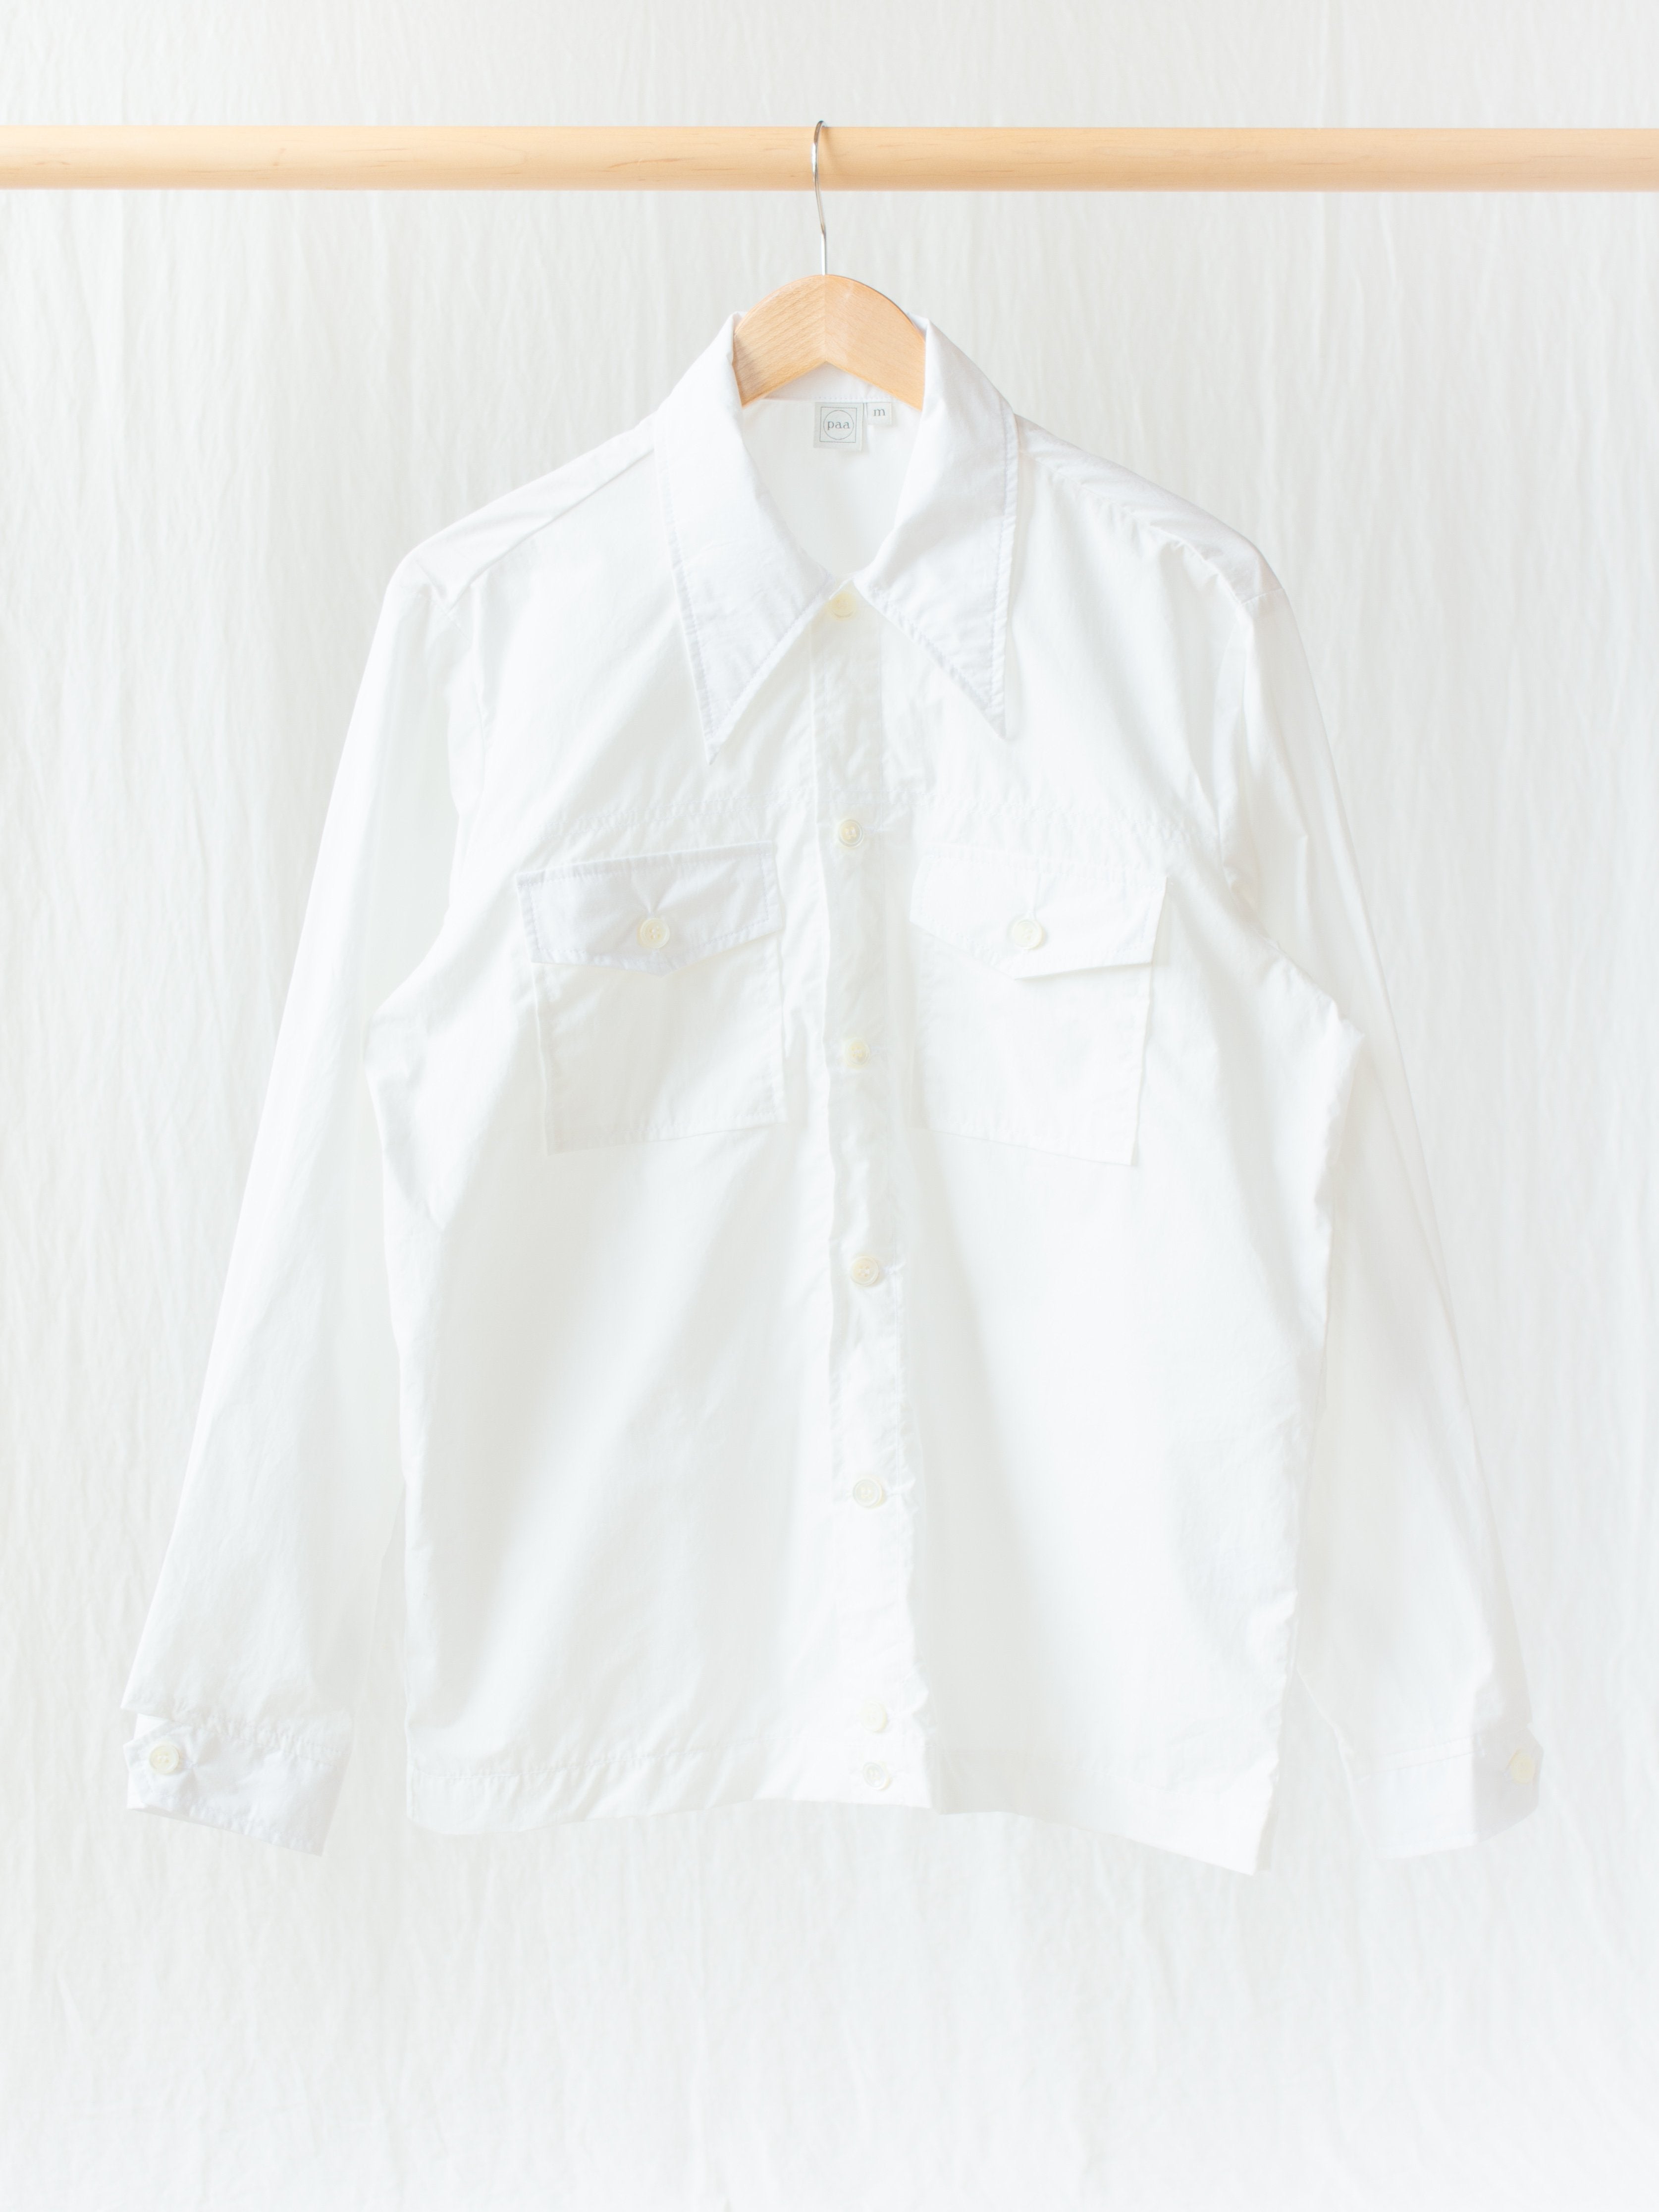 Namu Shop - paa Rodeo Shirt - White Typewriter Cotton